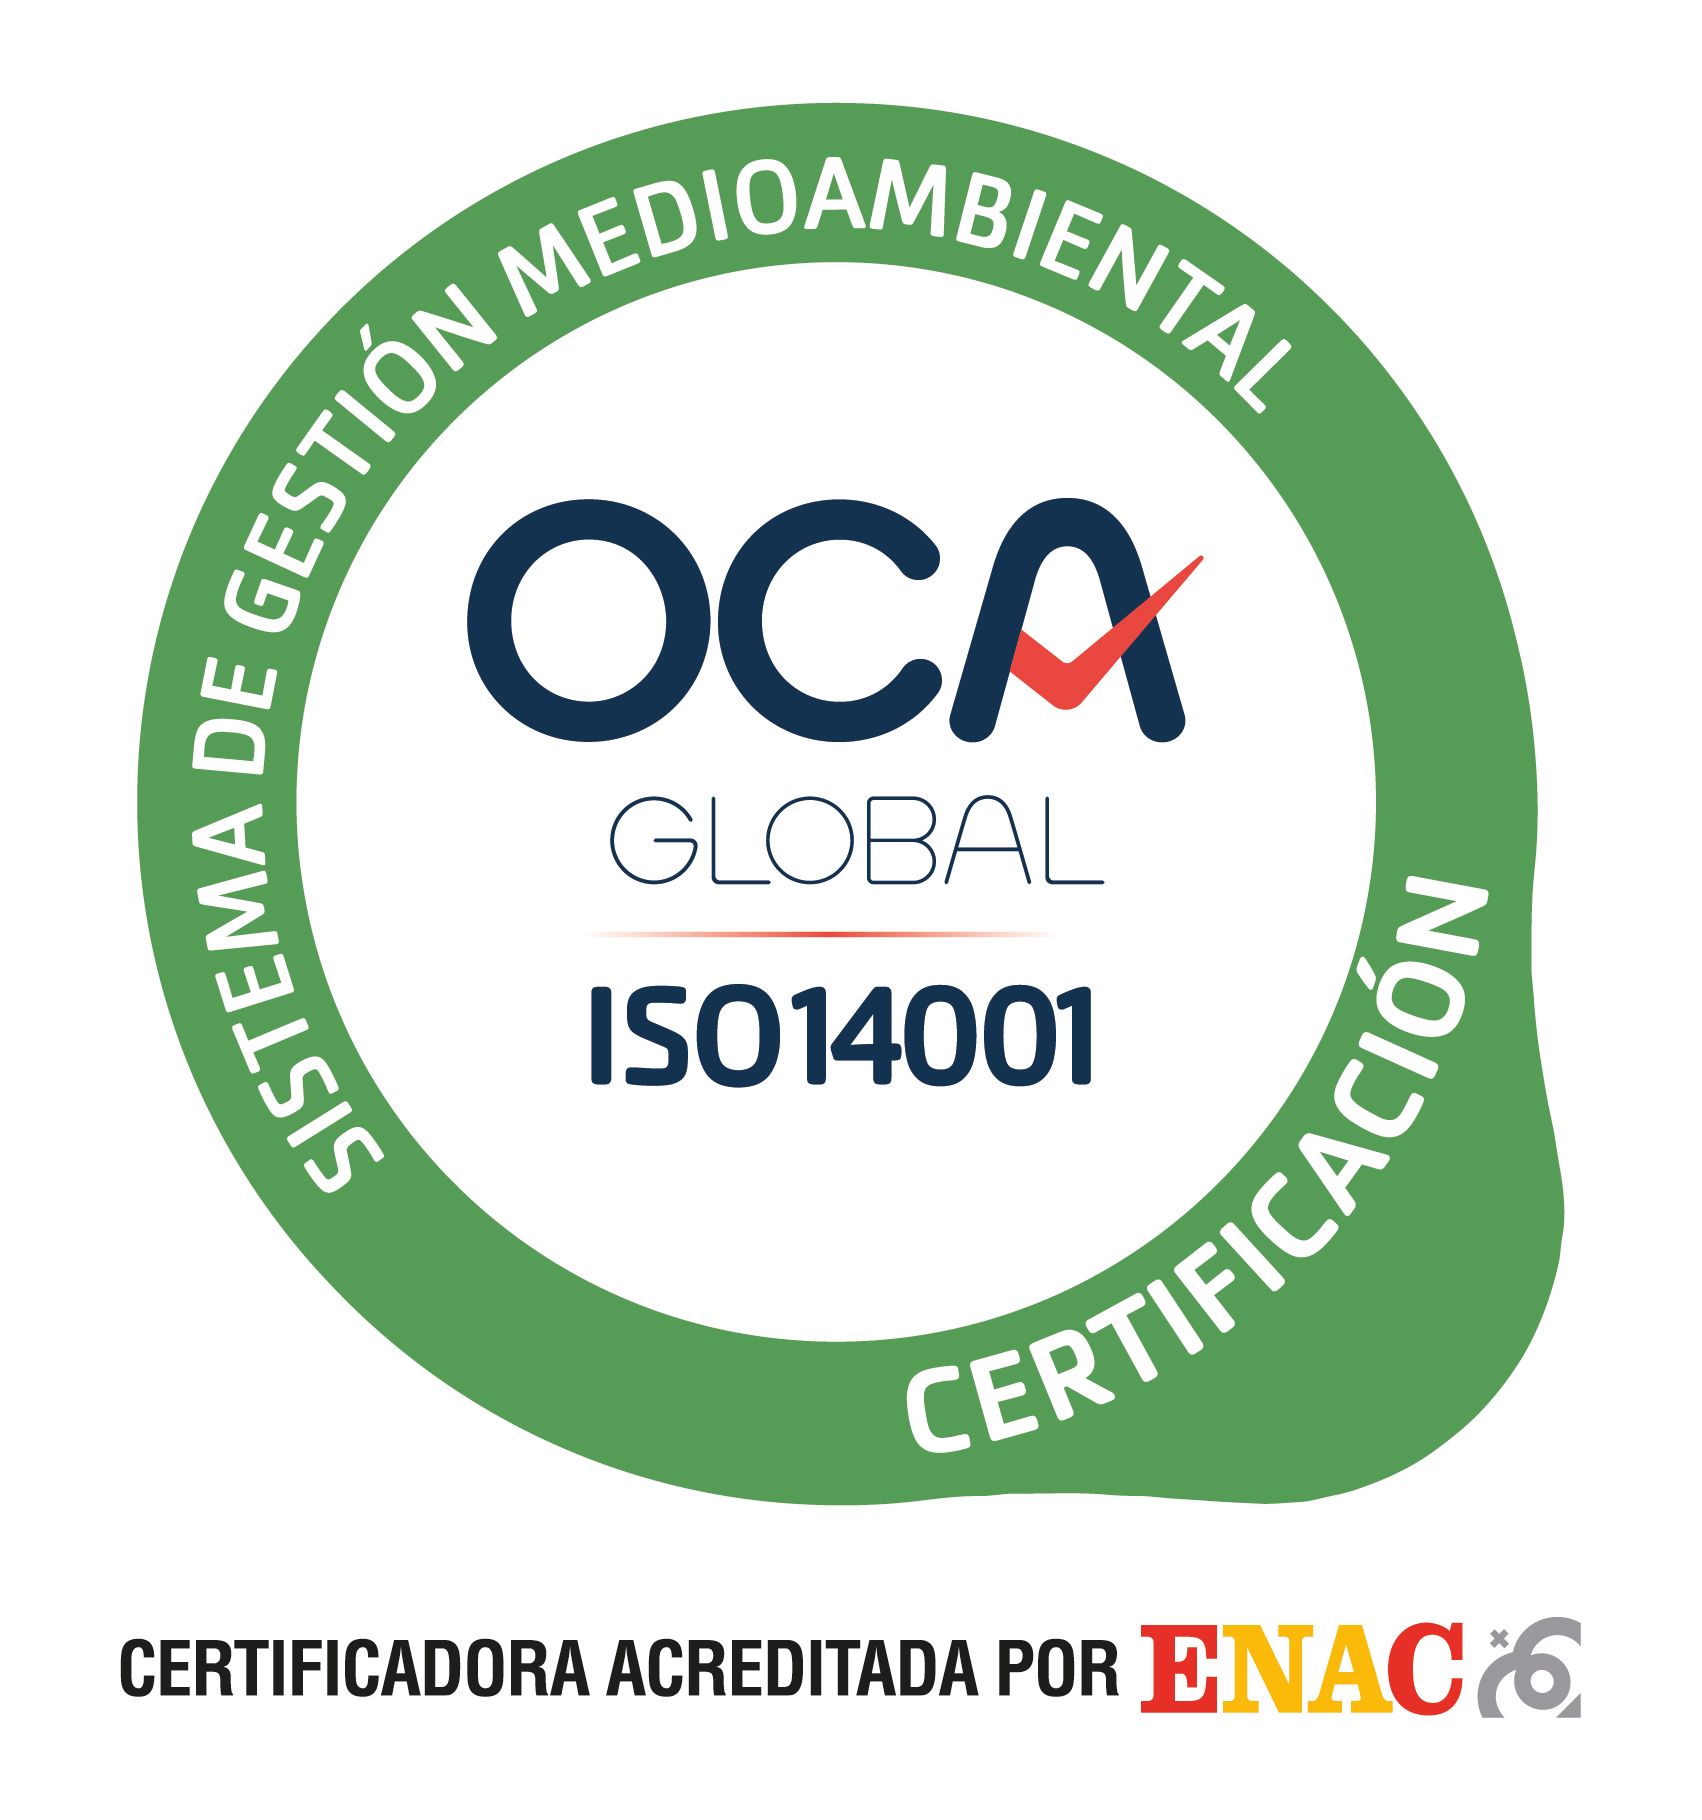 Certificación del sistema de gestión medioambiental conforme con la norma UNE-EN ISO 14001:2015